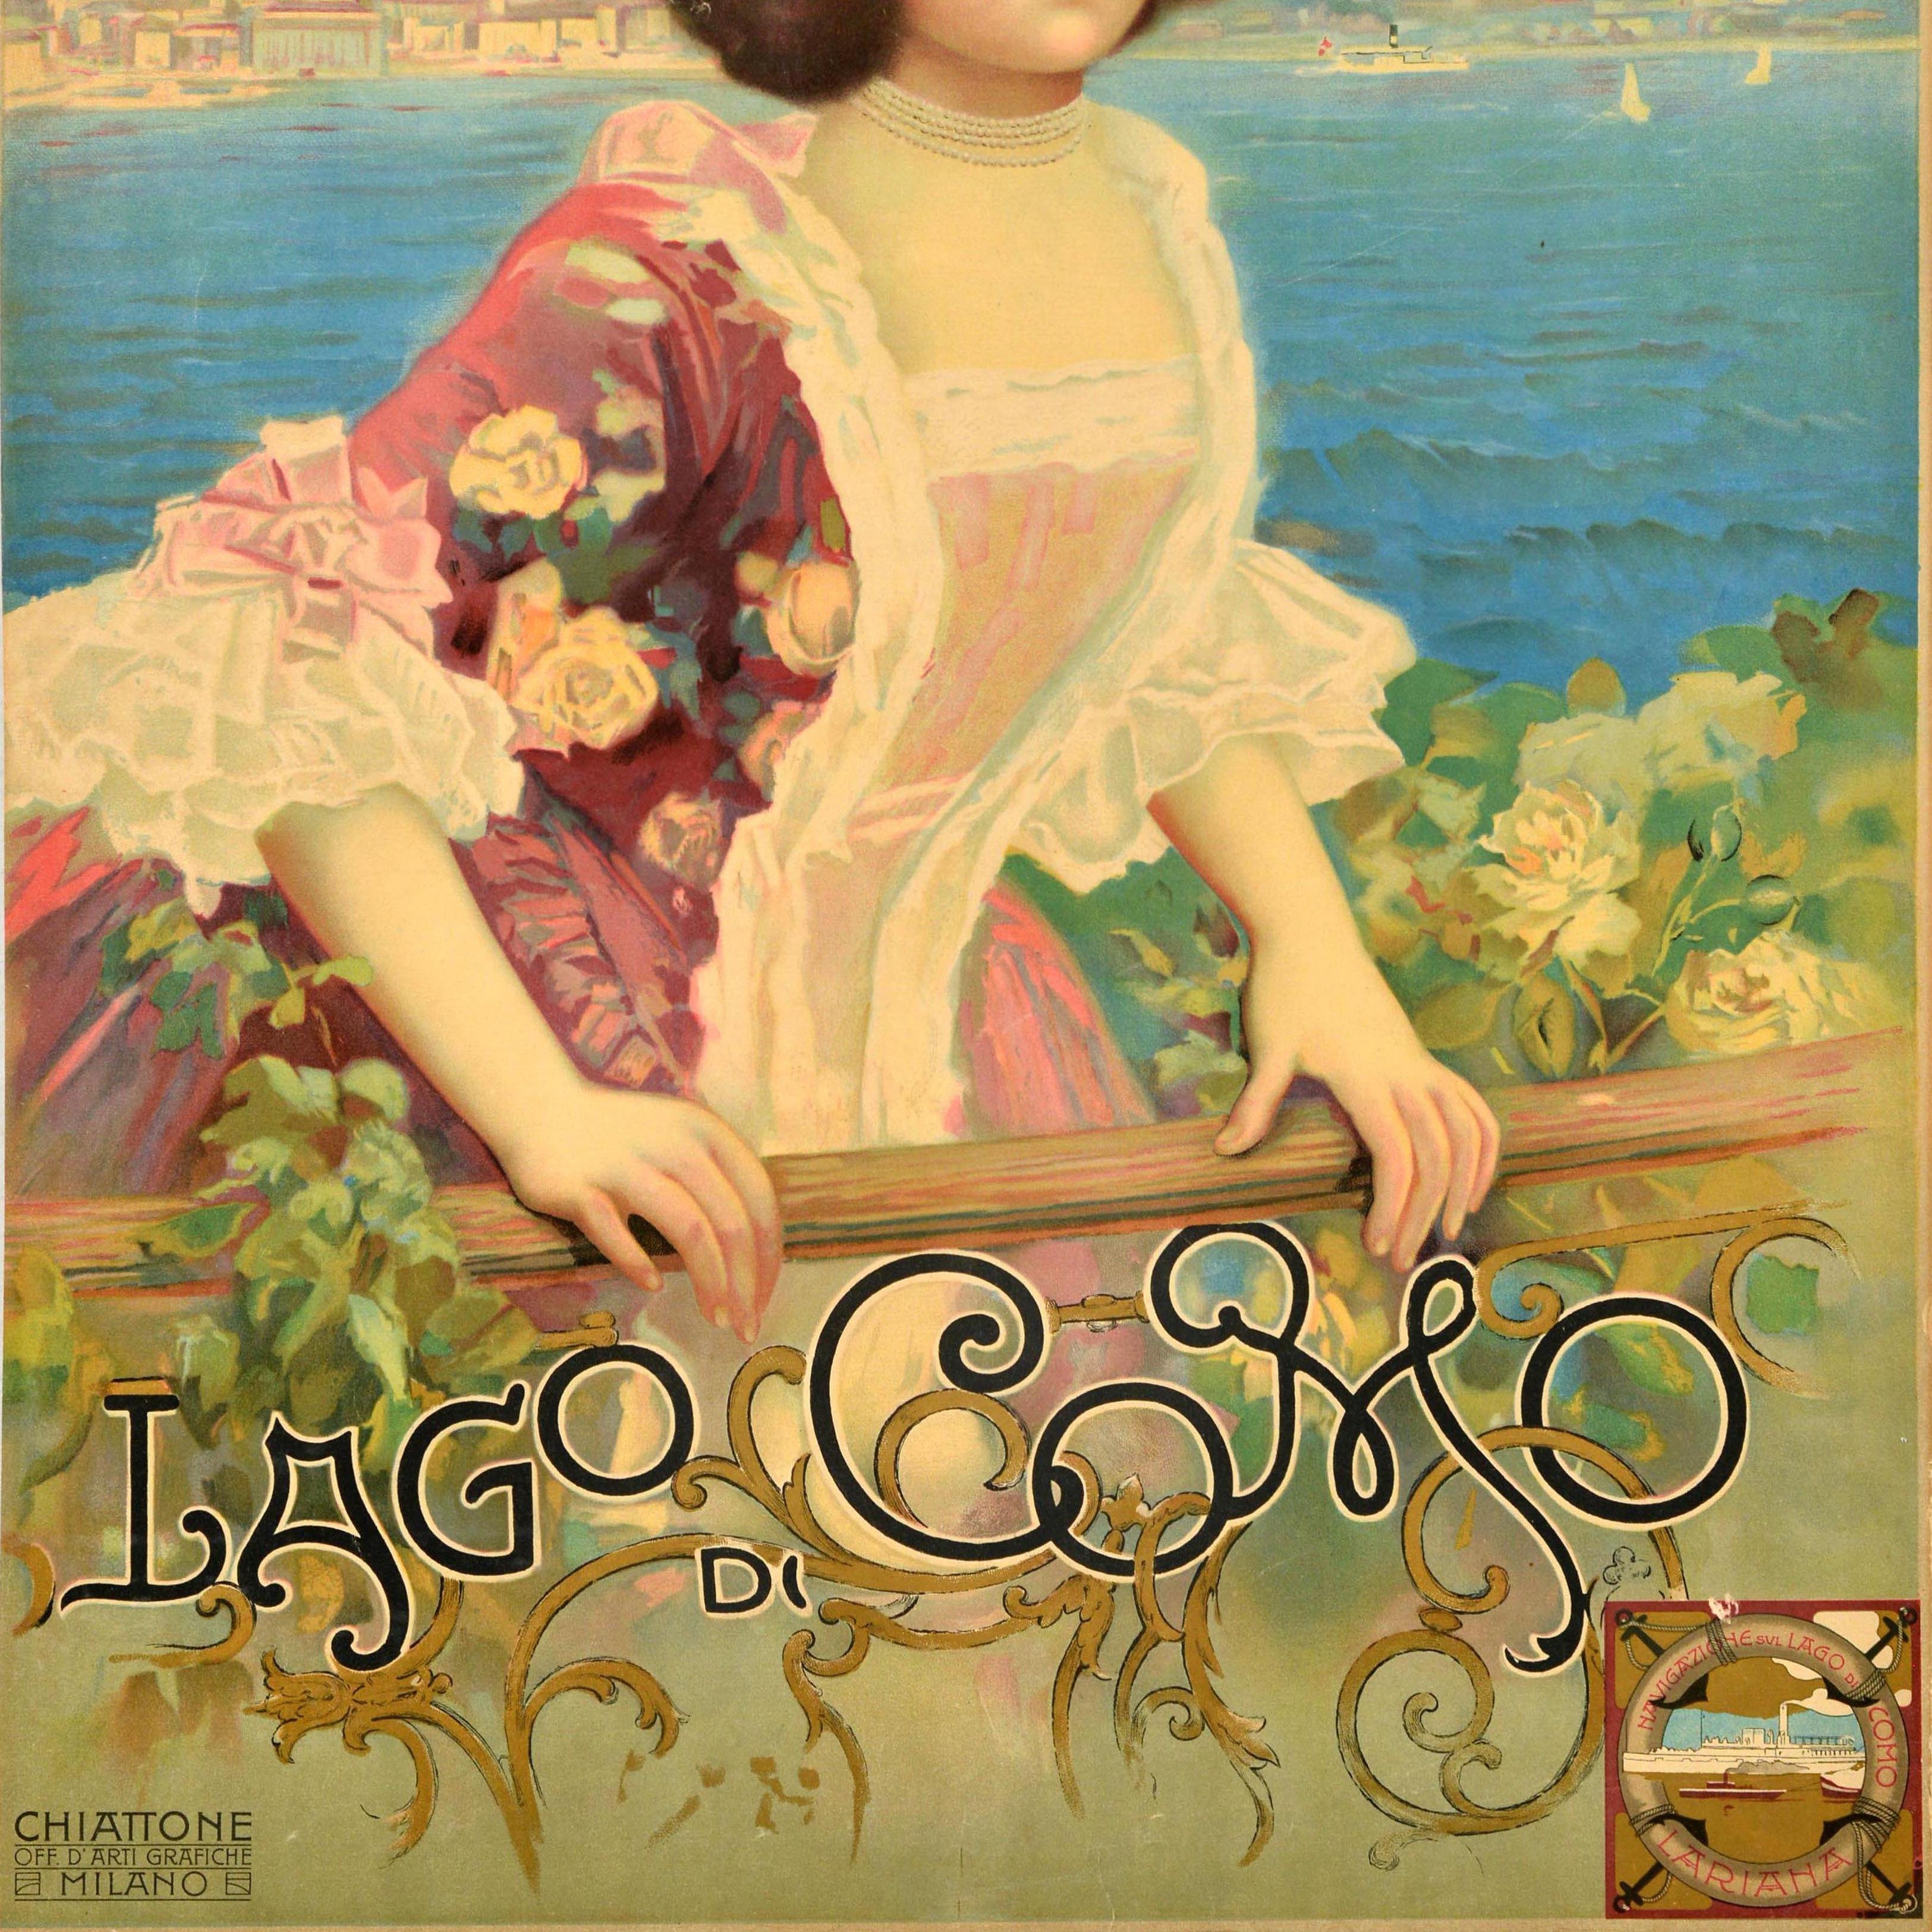 Originales antikes Reiseplakat für den Lago di Como mit einem eleganten Kunstwerk aus der Belle Epoque, das eine Dame in einem rosafarbenen Blumenkleid mit einer Blume im Haar zeigt, die an einer dekorativen Reling vor Segelbooten und Dampfschiffen